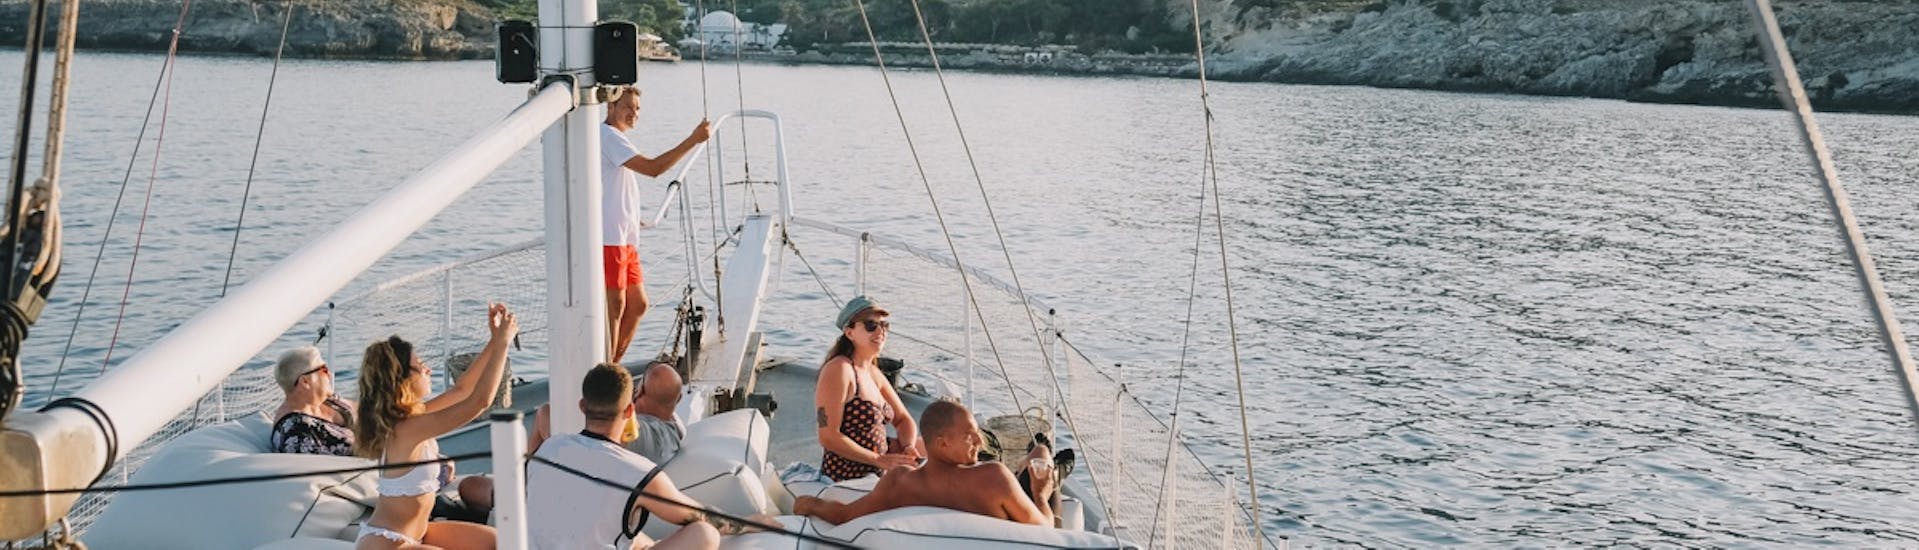 Segelboottour für Erwachsene entlang der Ostküste von Rhodos mit Schnorcheln.